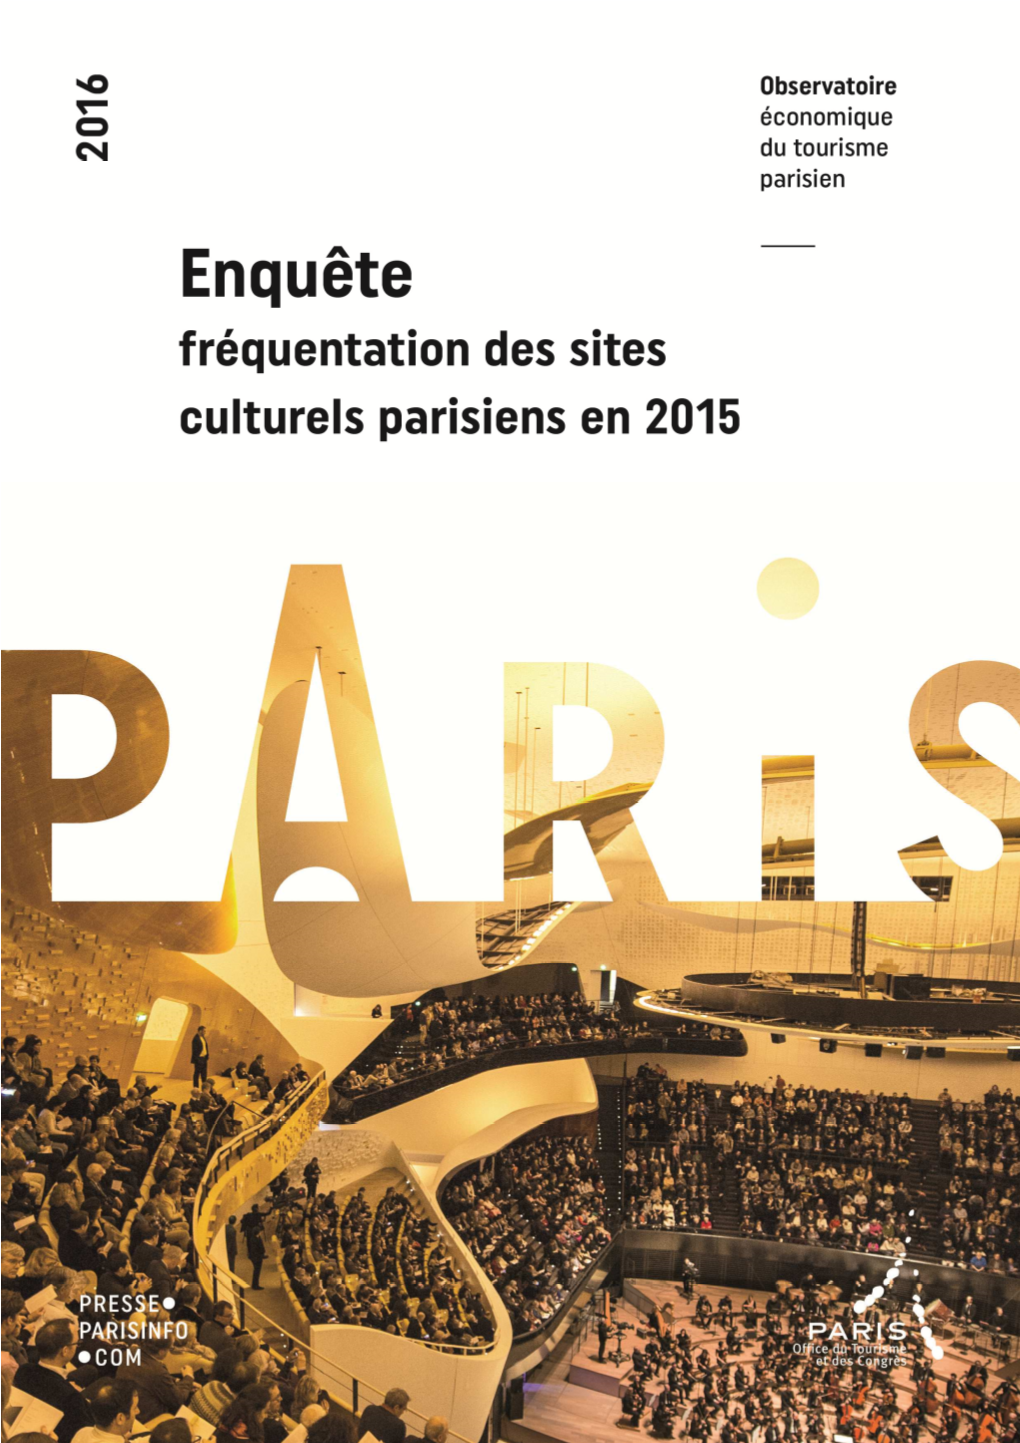 Enquête De Fréquentation Des Sites Culturels En 2015